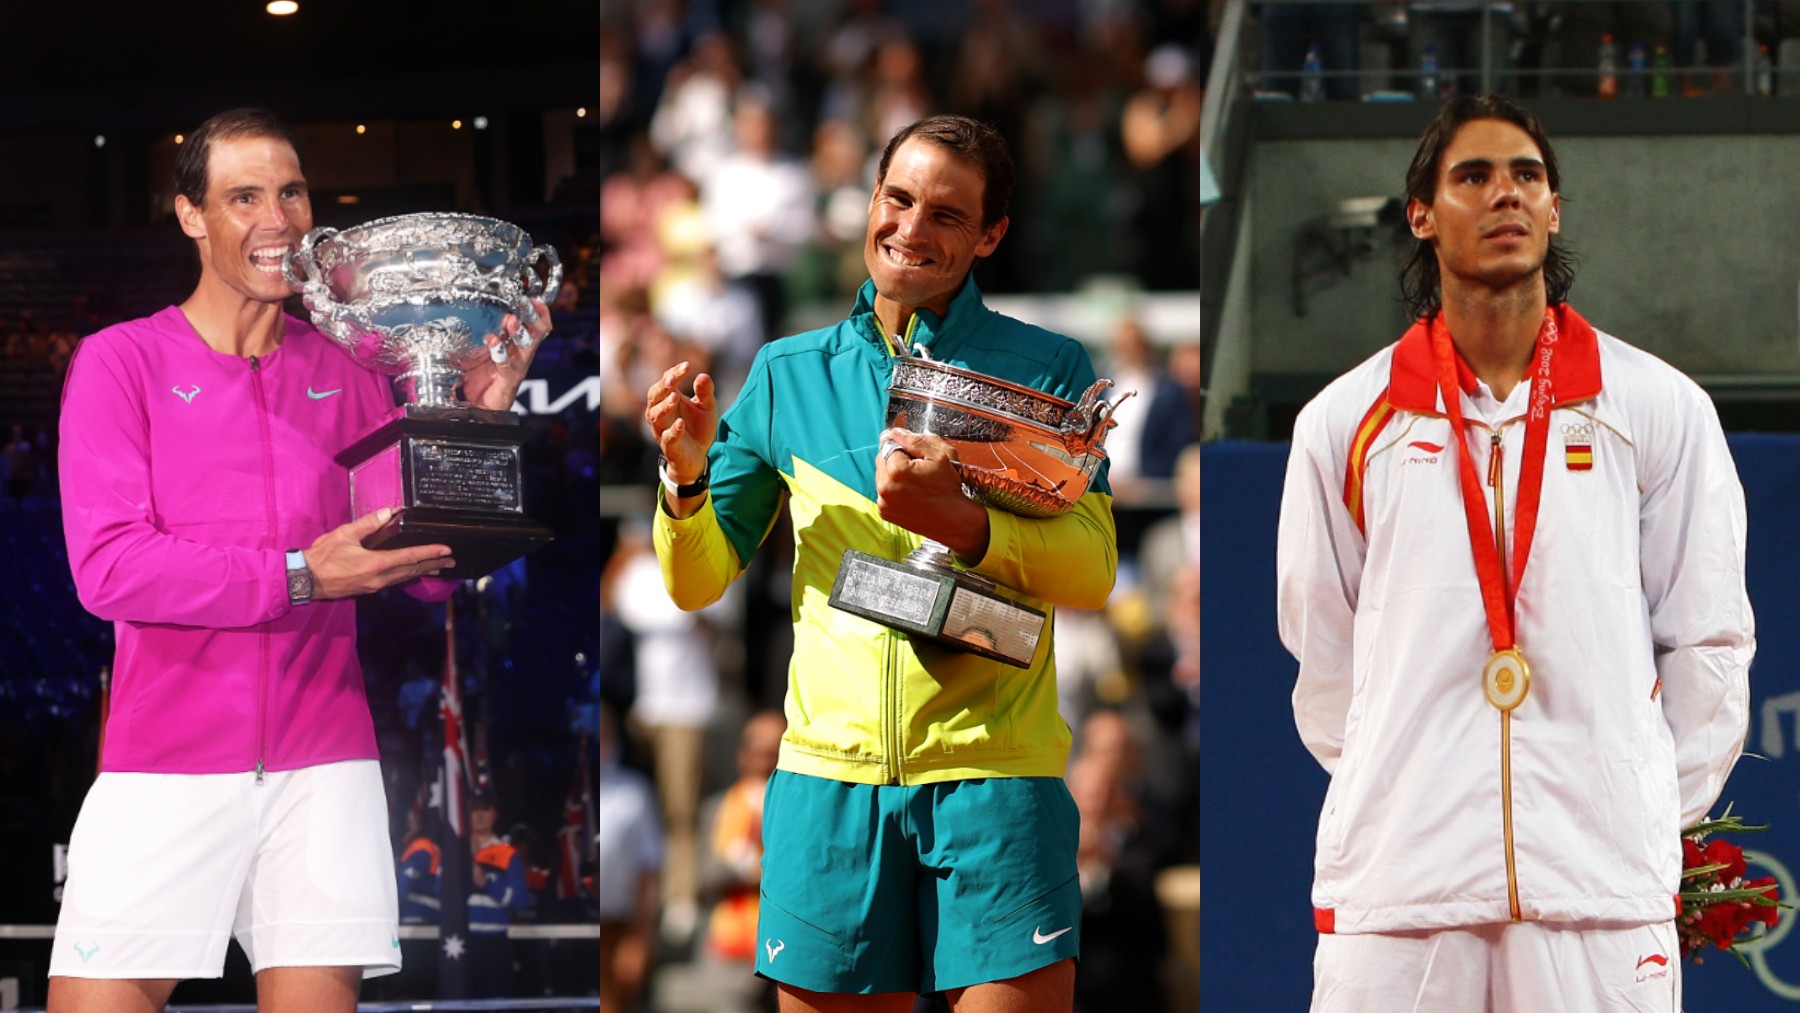 Palmarés de Rafa Nadal: todos sus títulos y éxitos en el deporte. (Foto: Getty)